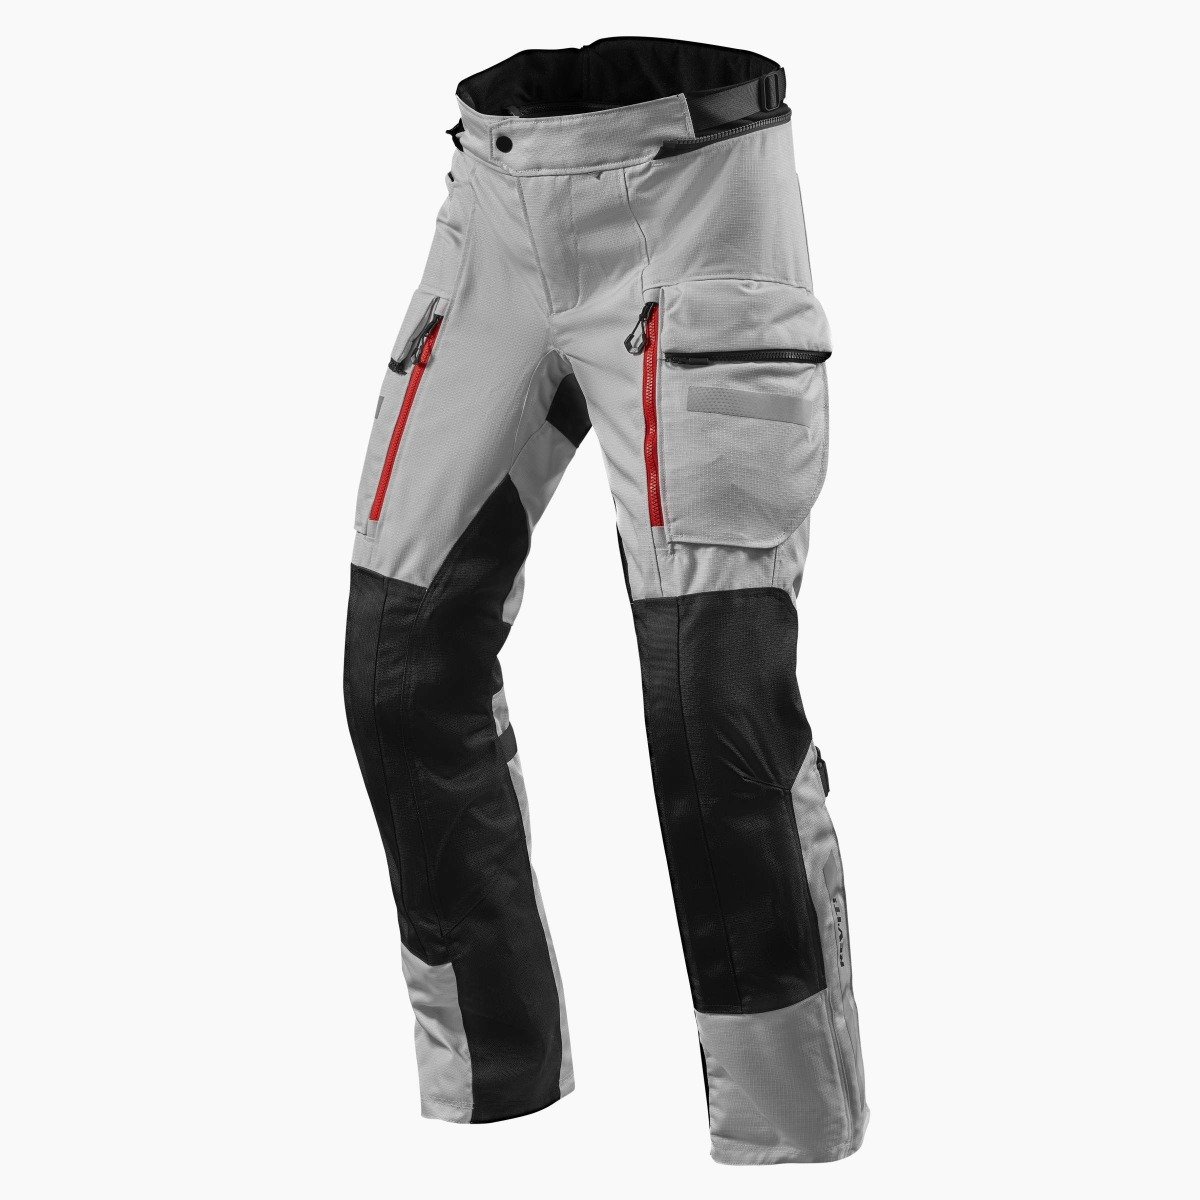 Image of REV'IT! Sand 4 H2O Standard Argent Noir Pantalon Taille 3XL